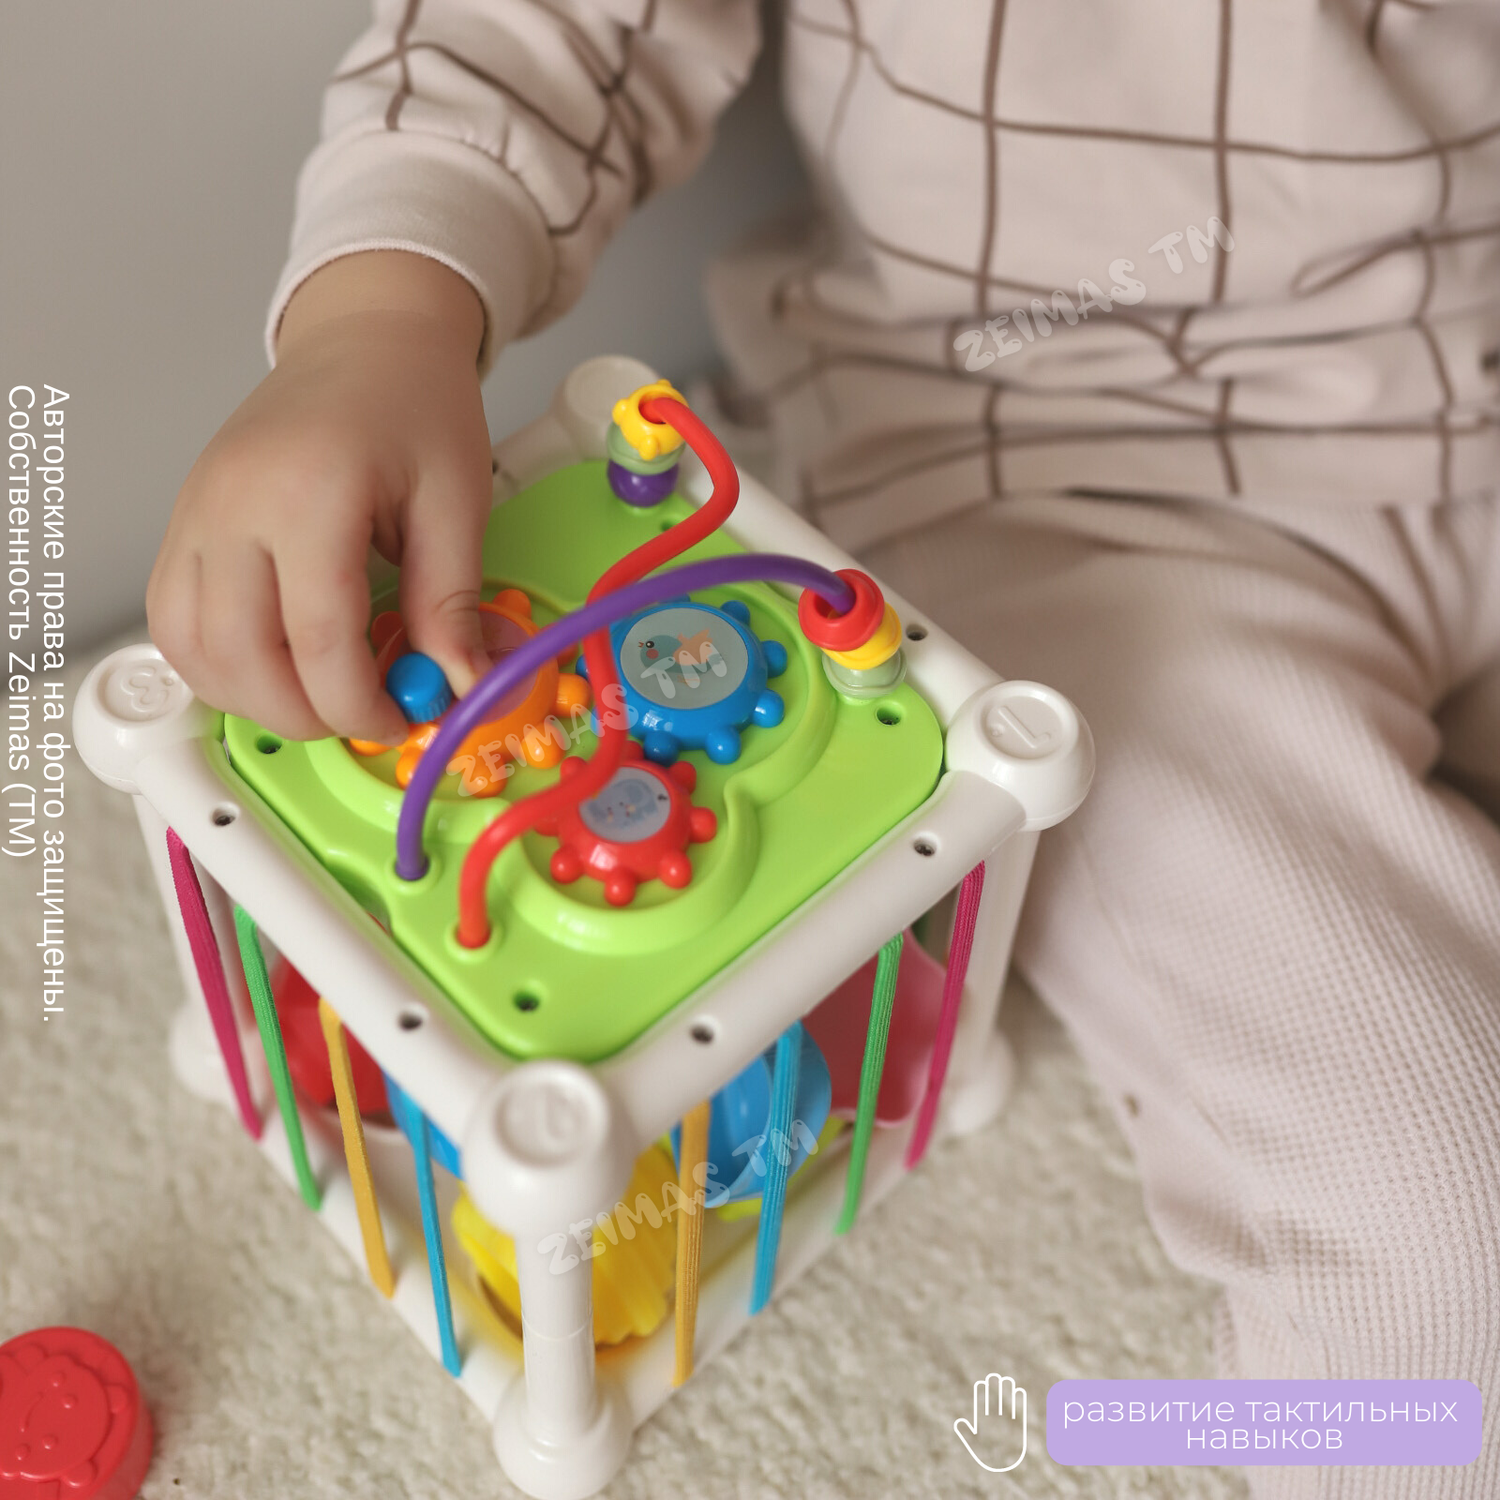 Сортер-куб Zeimas Монтессори 6 фигурок с погремушкой развивающая игрушка ксилофон - фото 8